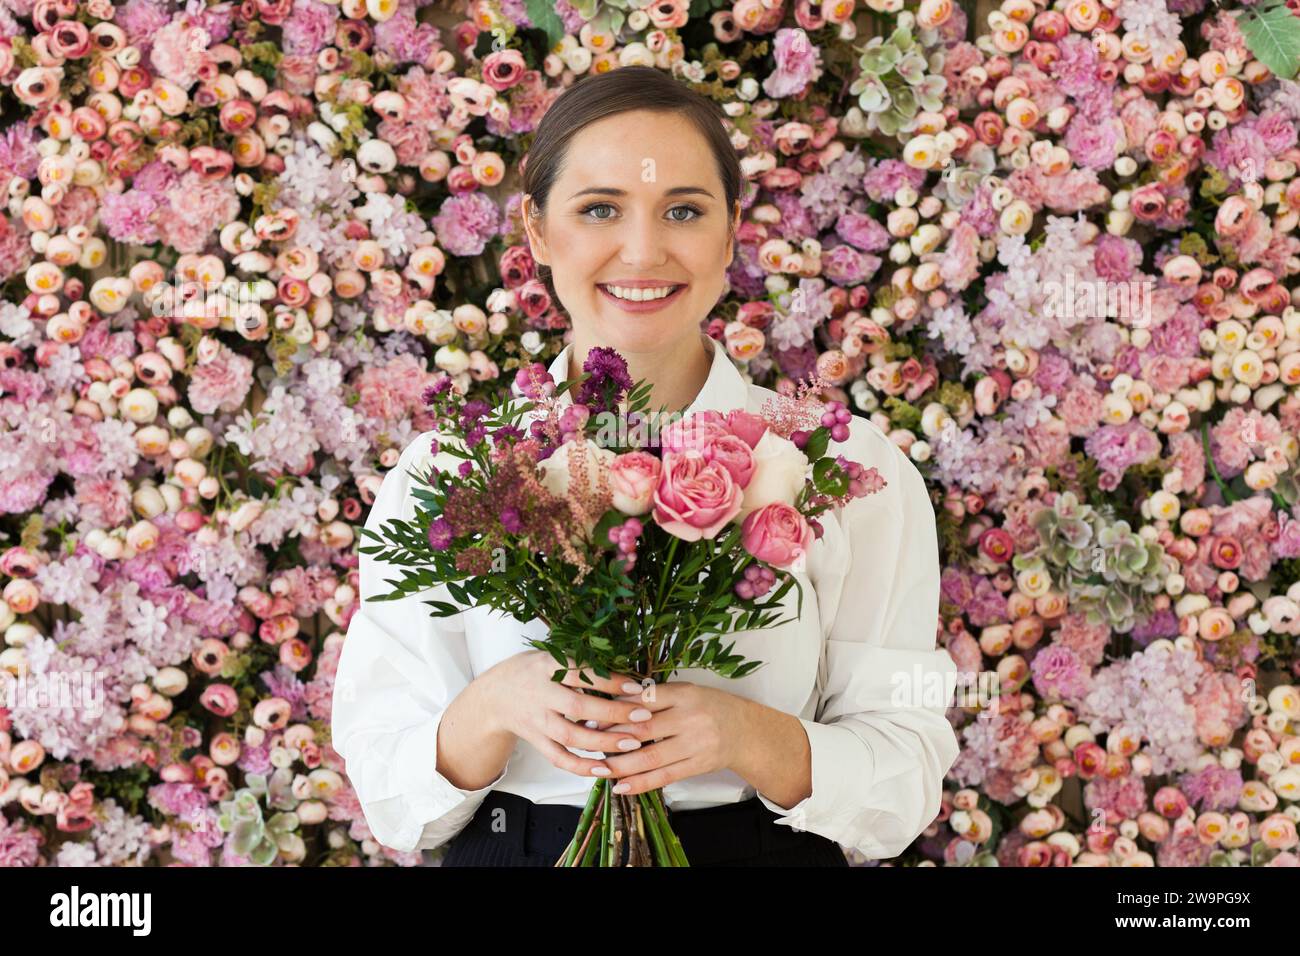 Glückliche lächelnde brünette Frau mit niedlichem Lächeln, die Blumengeschenk hält und auf rosa floralem Hintergrund posiert. Blühend, Liebe, Geburtstagsfeiertag am 8. märz Stockfoto